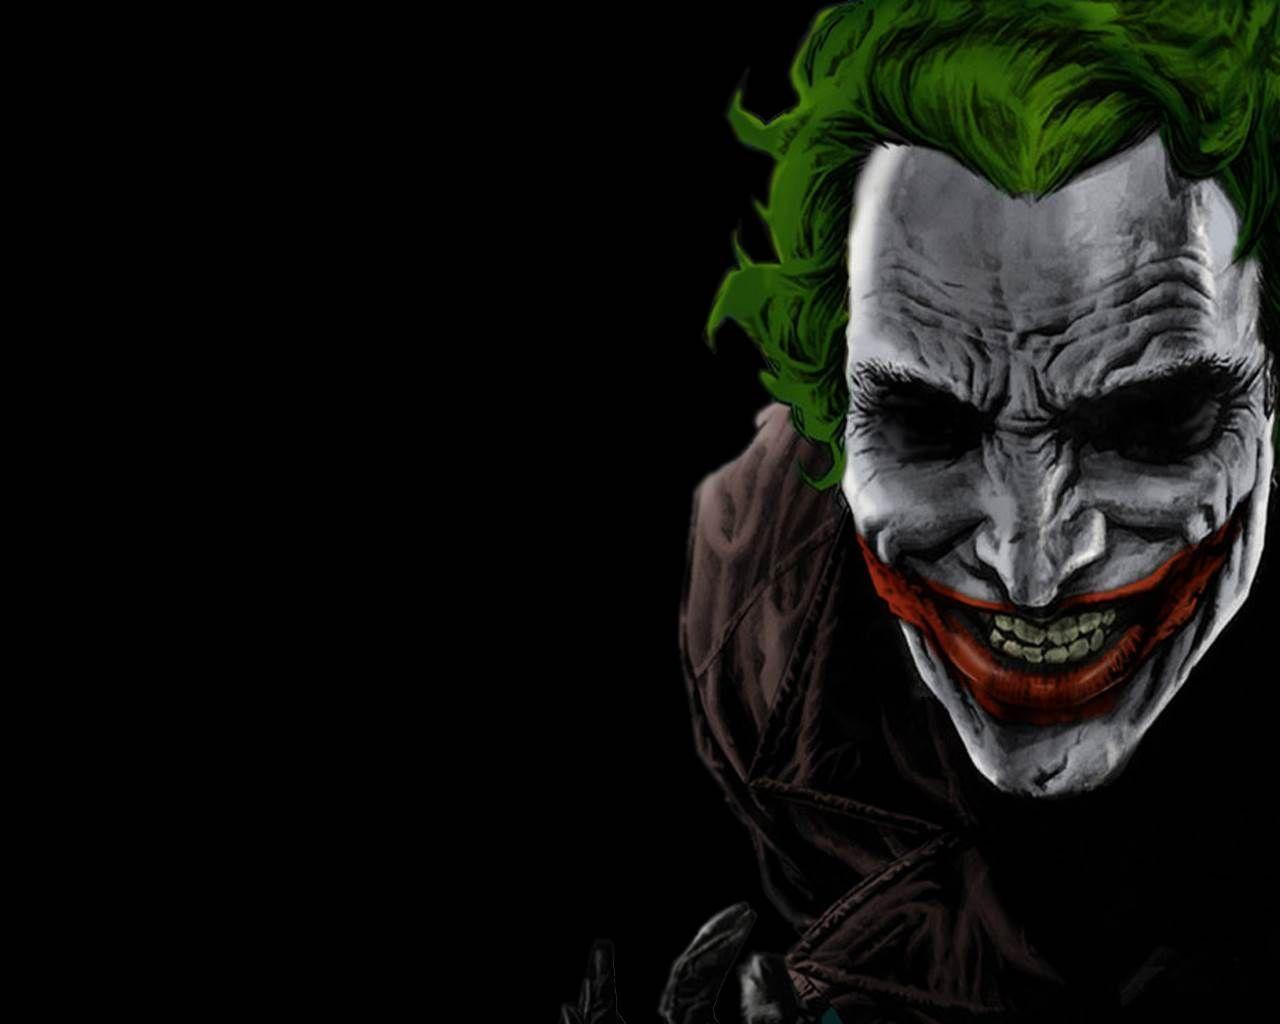 1280x1024 Hình nền Joker chất lượng cao Tải xuống miễn phí Hình ảnh 1280 × 1024 Joker